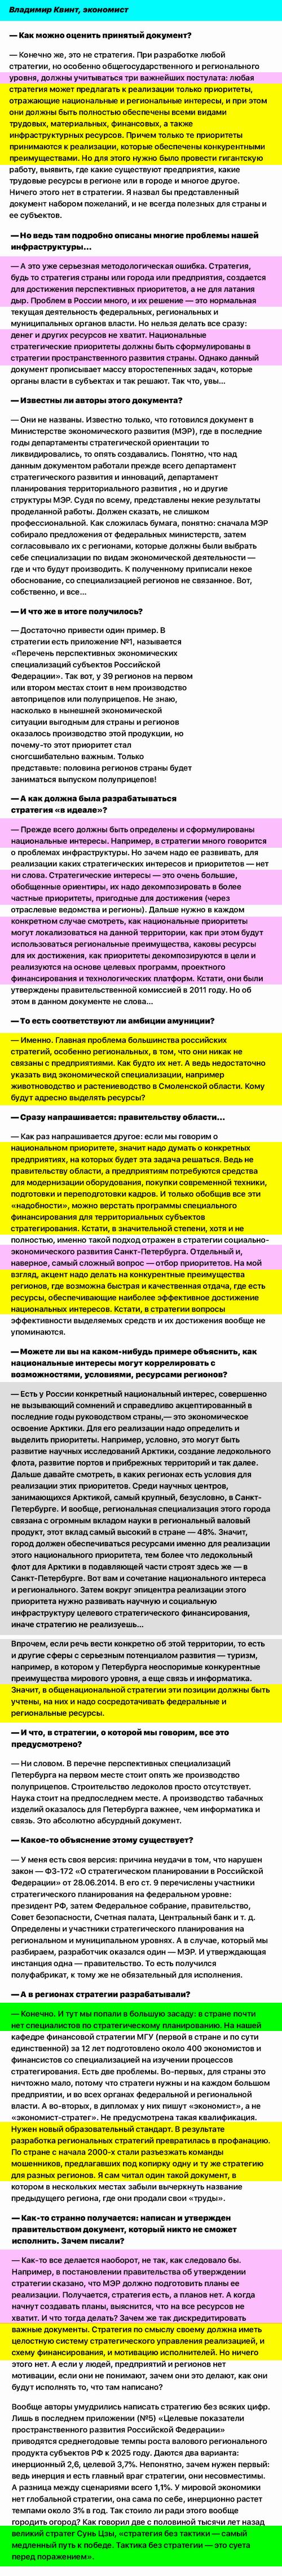 ст - О стратегич планир - Территория полуприцепов, В.Квинт, М., 2019 (v2)